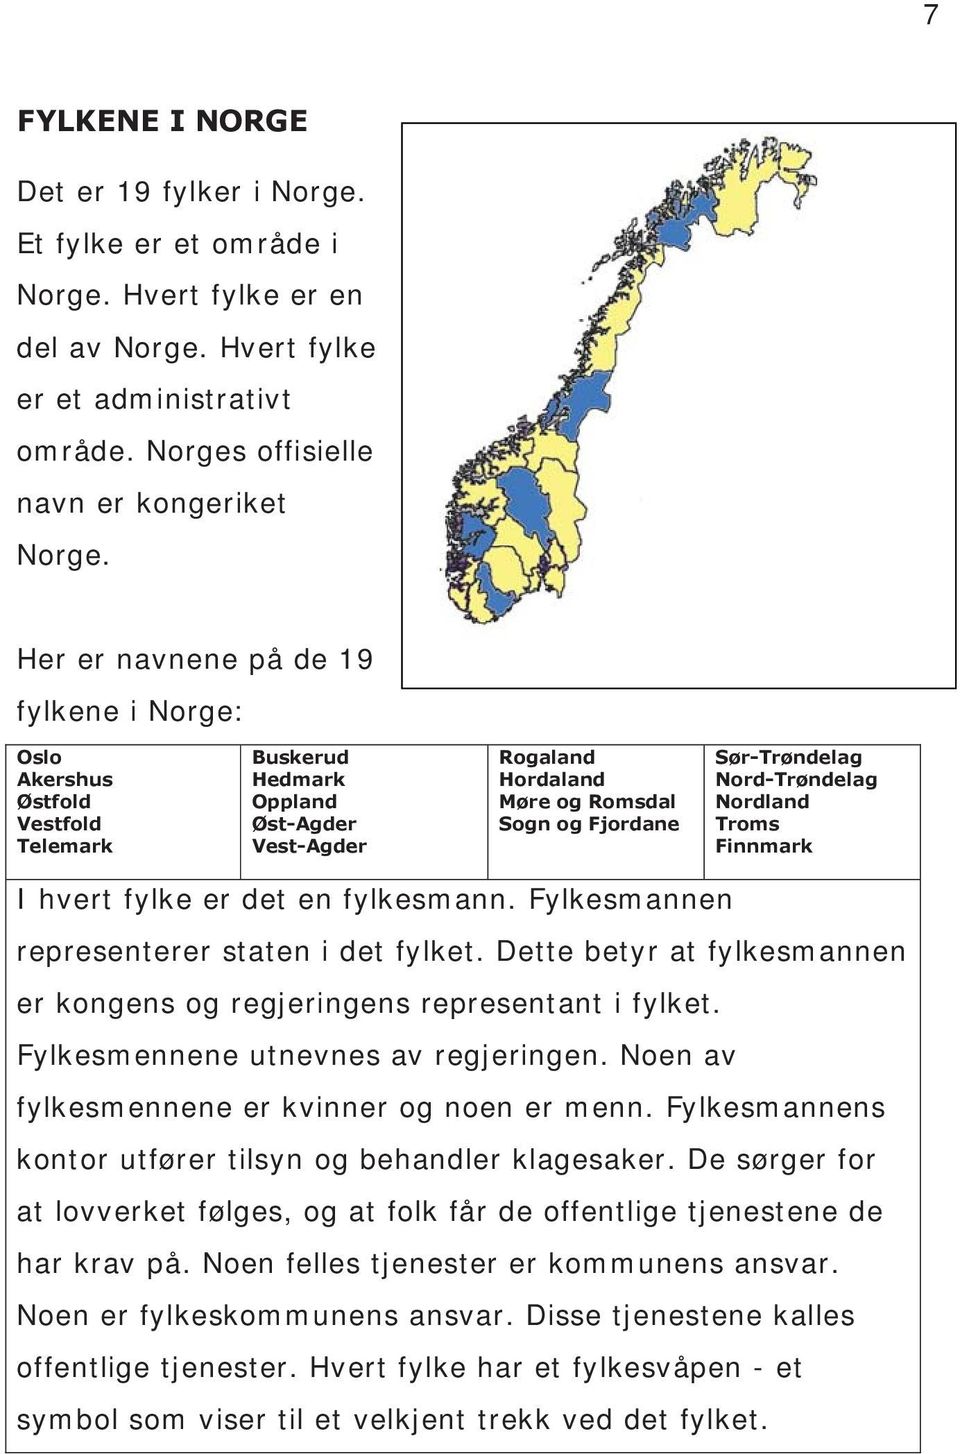 Nord-Trøndelag Nordland Troms Finnmark I hvert fylke er det en fylkesmann. Fylkesmannen representerer staten i det fylket. Dette betyr at fylkesmannen er kongens og regjeringens representant i fylket.